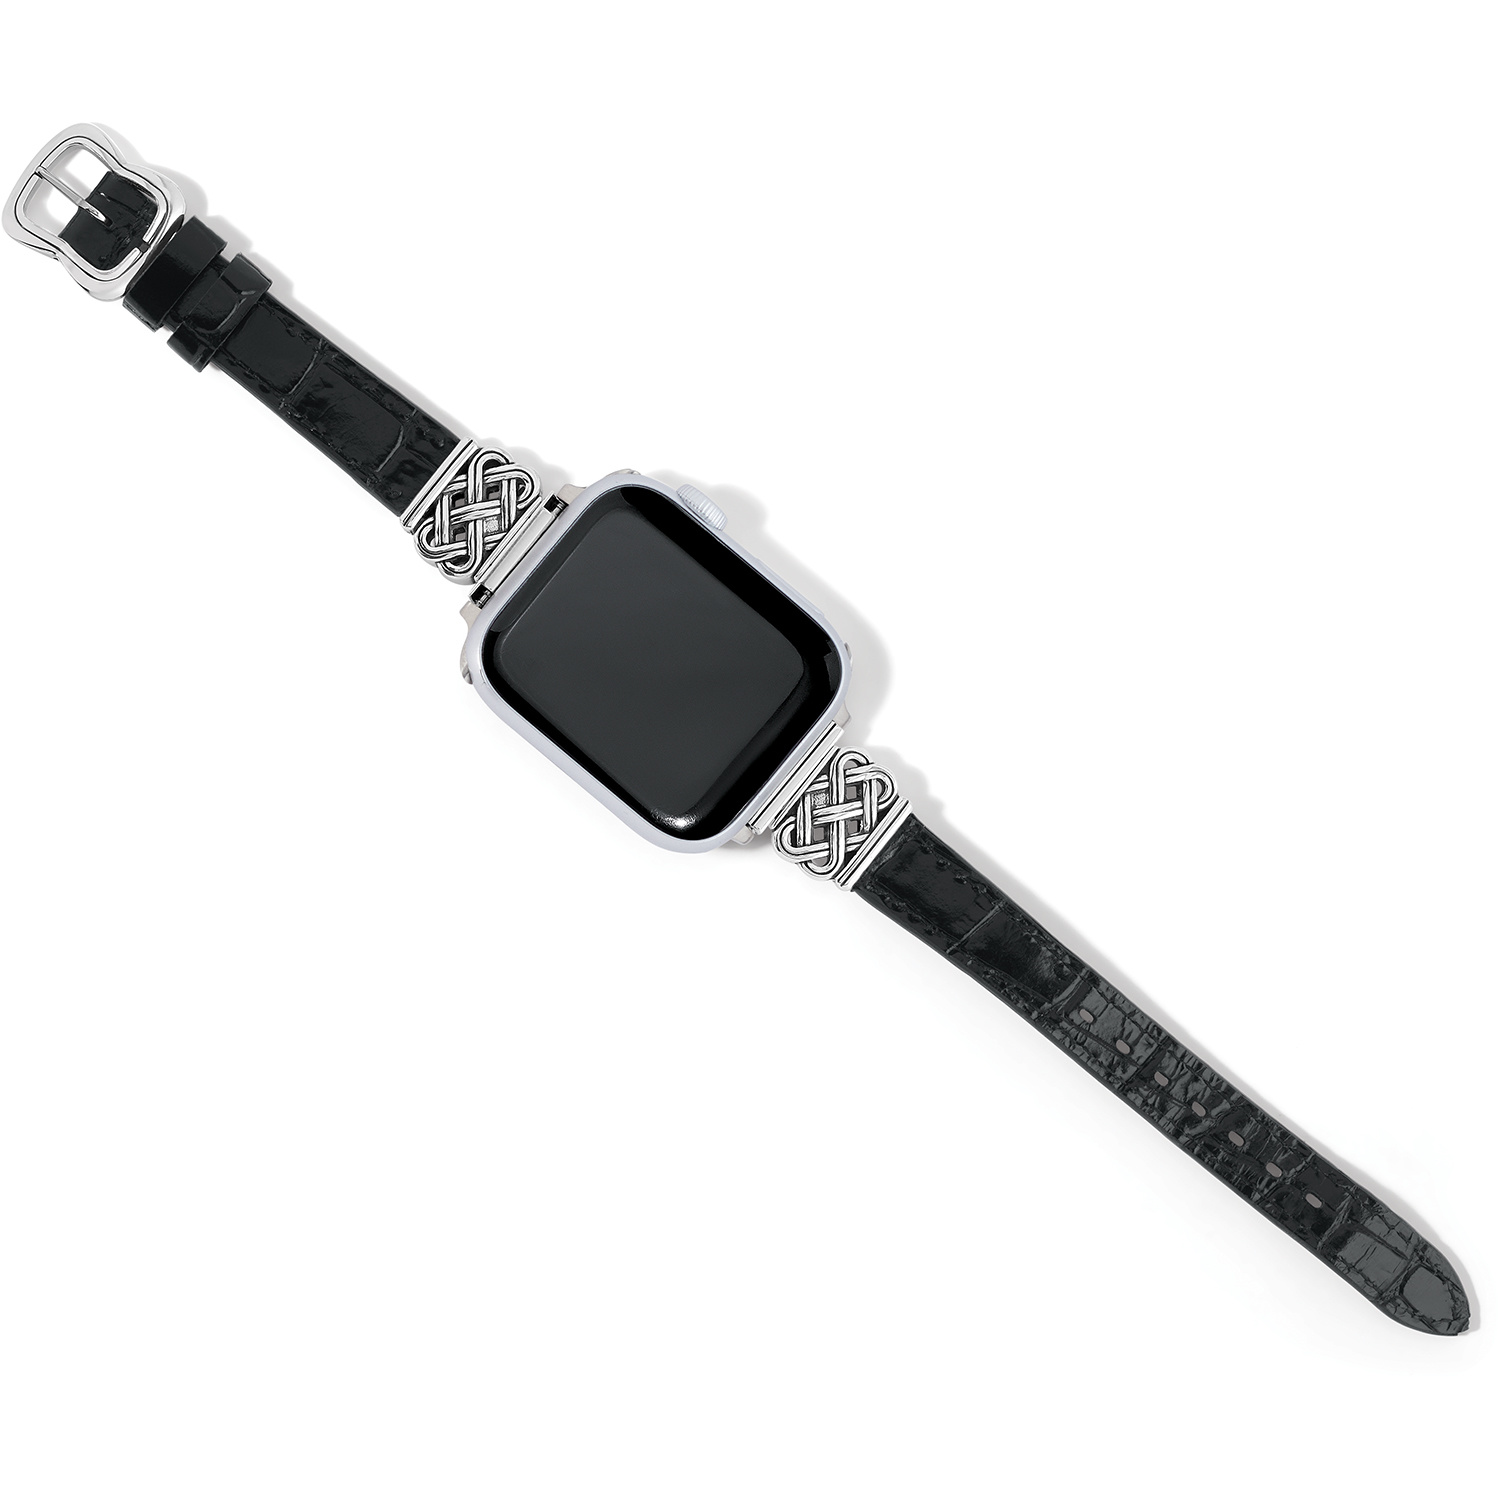 Apple Watch Bands – mzticalboutique